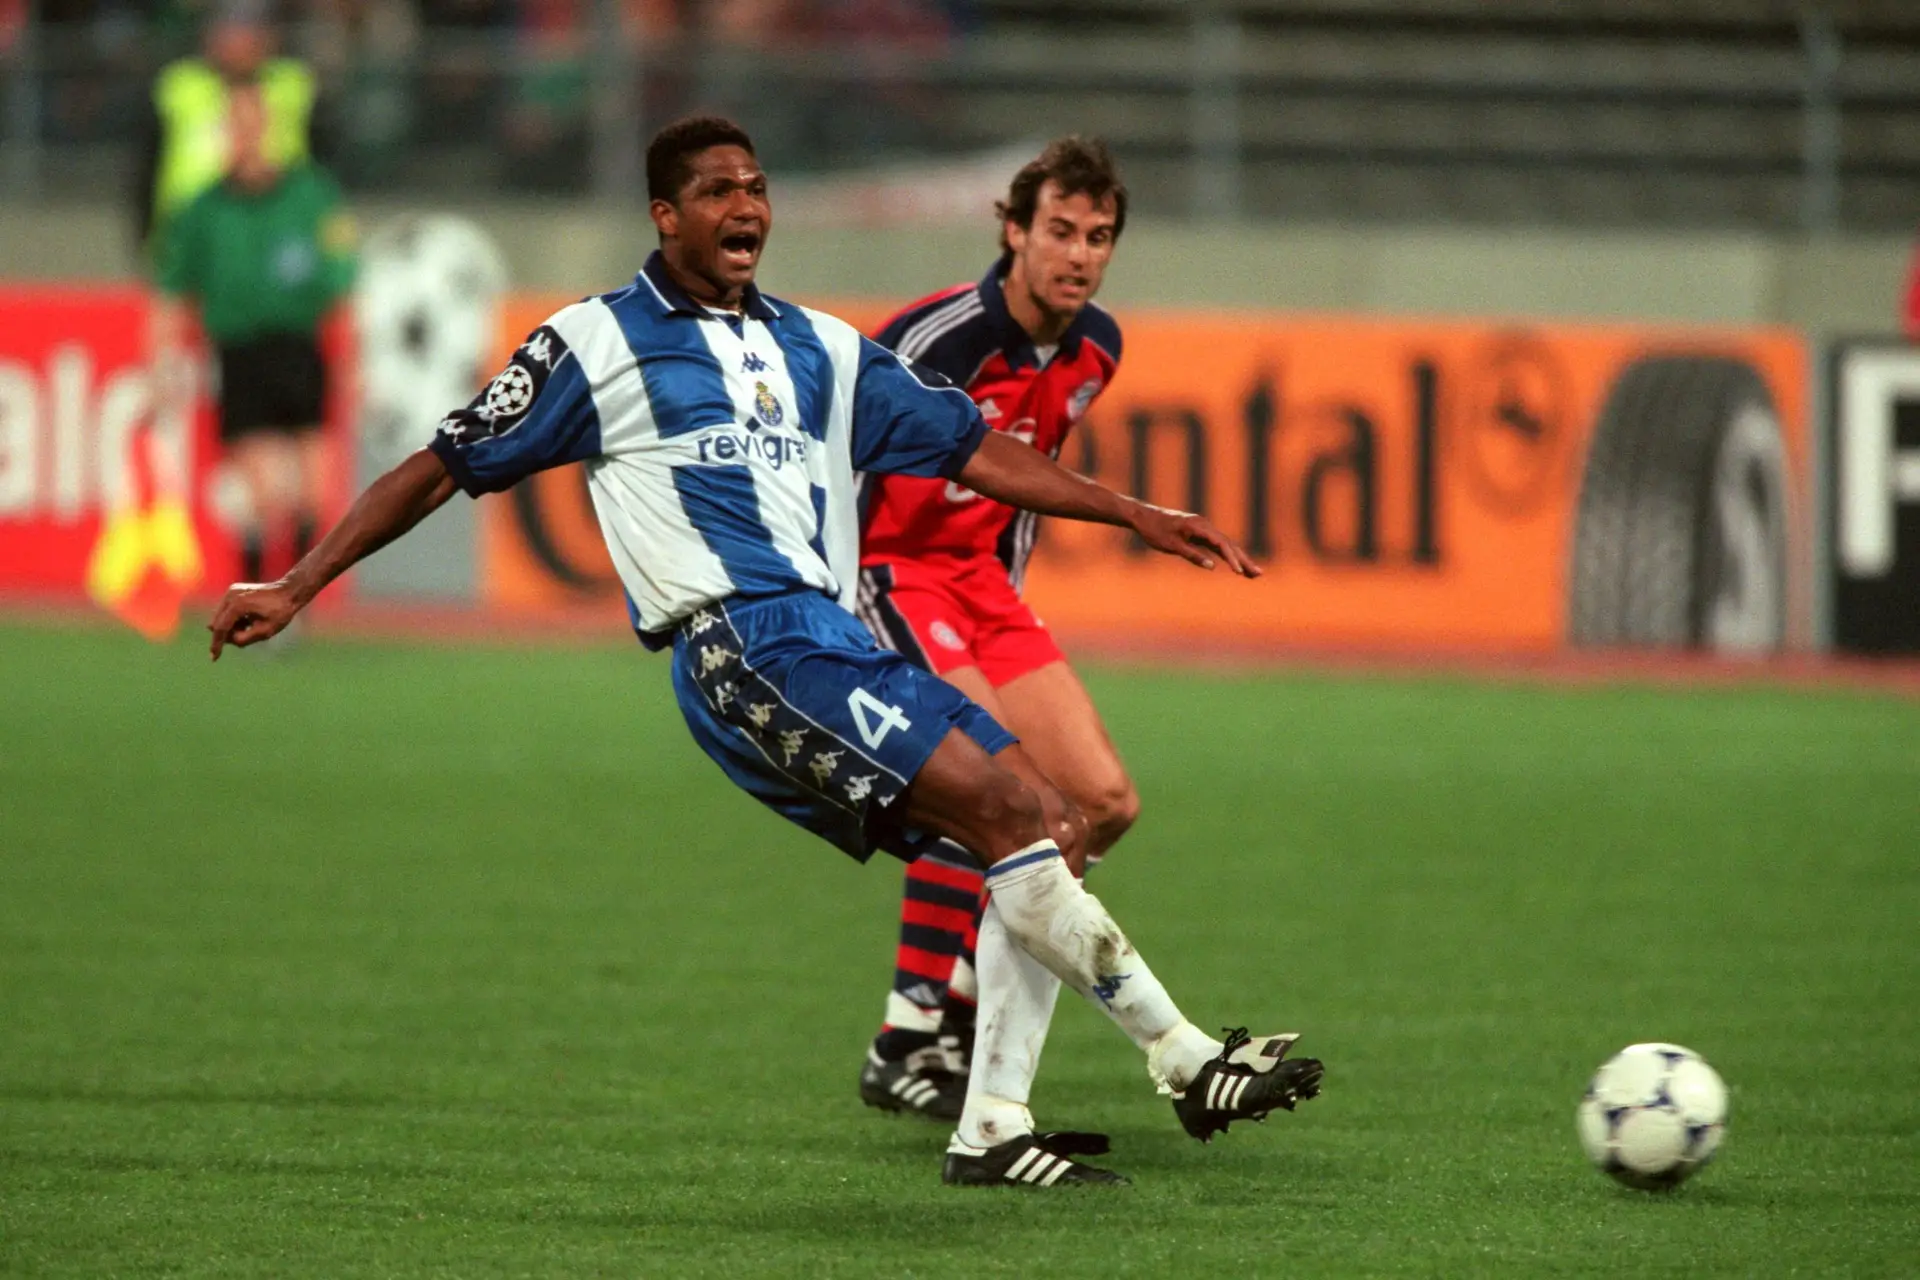 Nos anos 90 havia um sentimento de ódio e raiva complicado em relação ao FC  Porto. Quiseram tirar o mérito do nosso trabalho e conquistas”